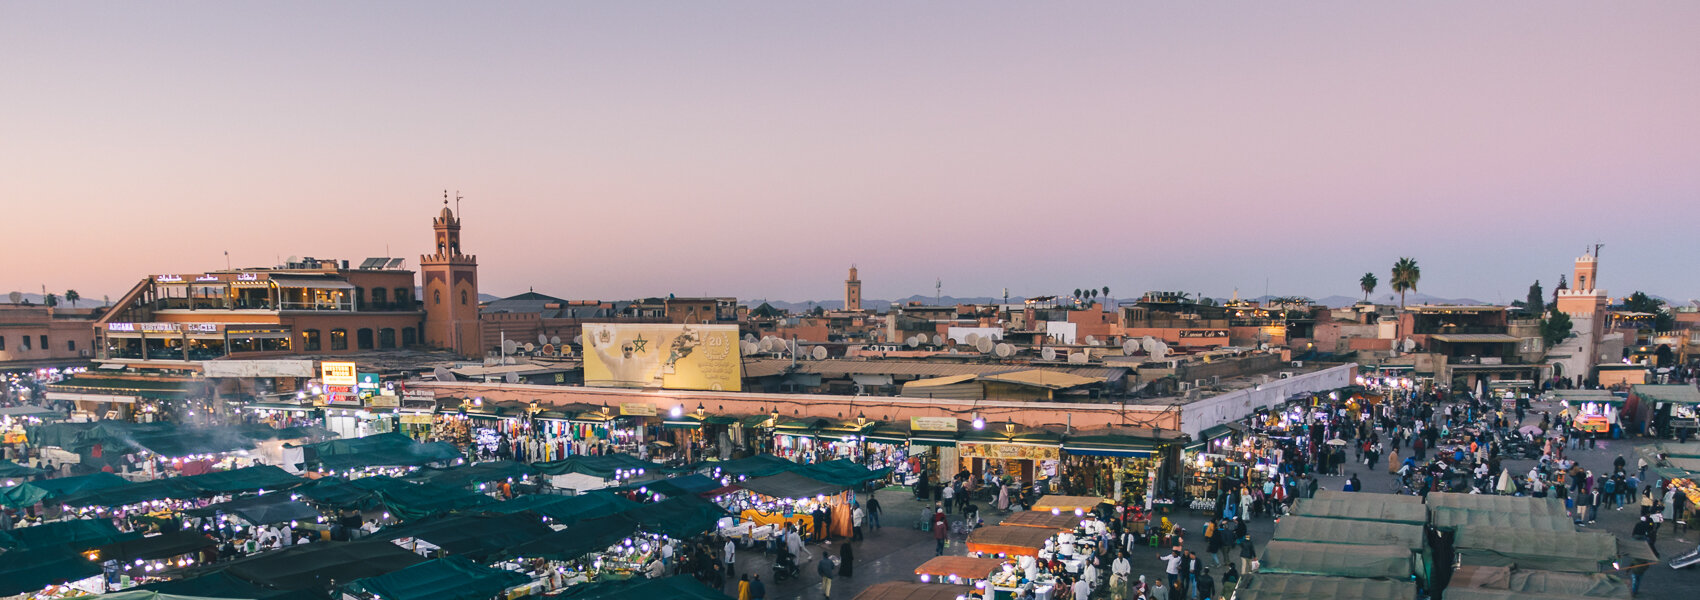 Où dormir à Marrakech